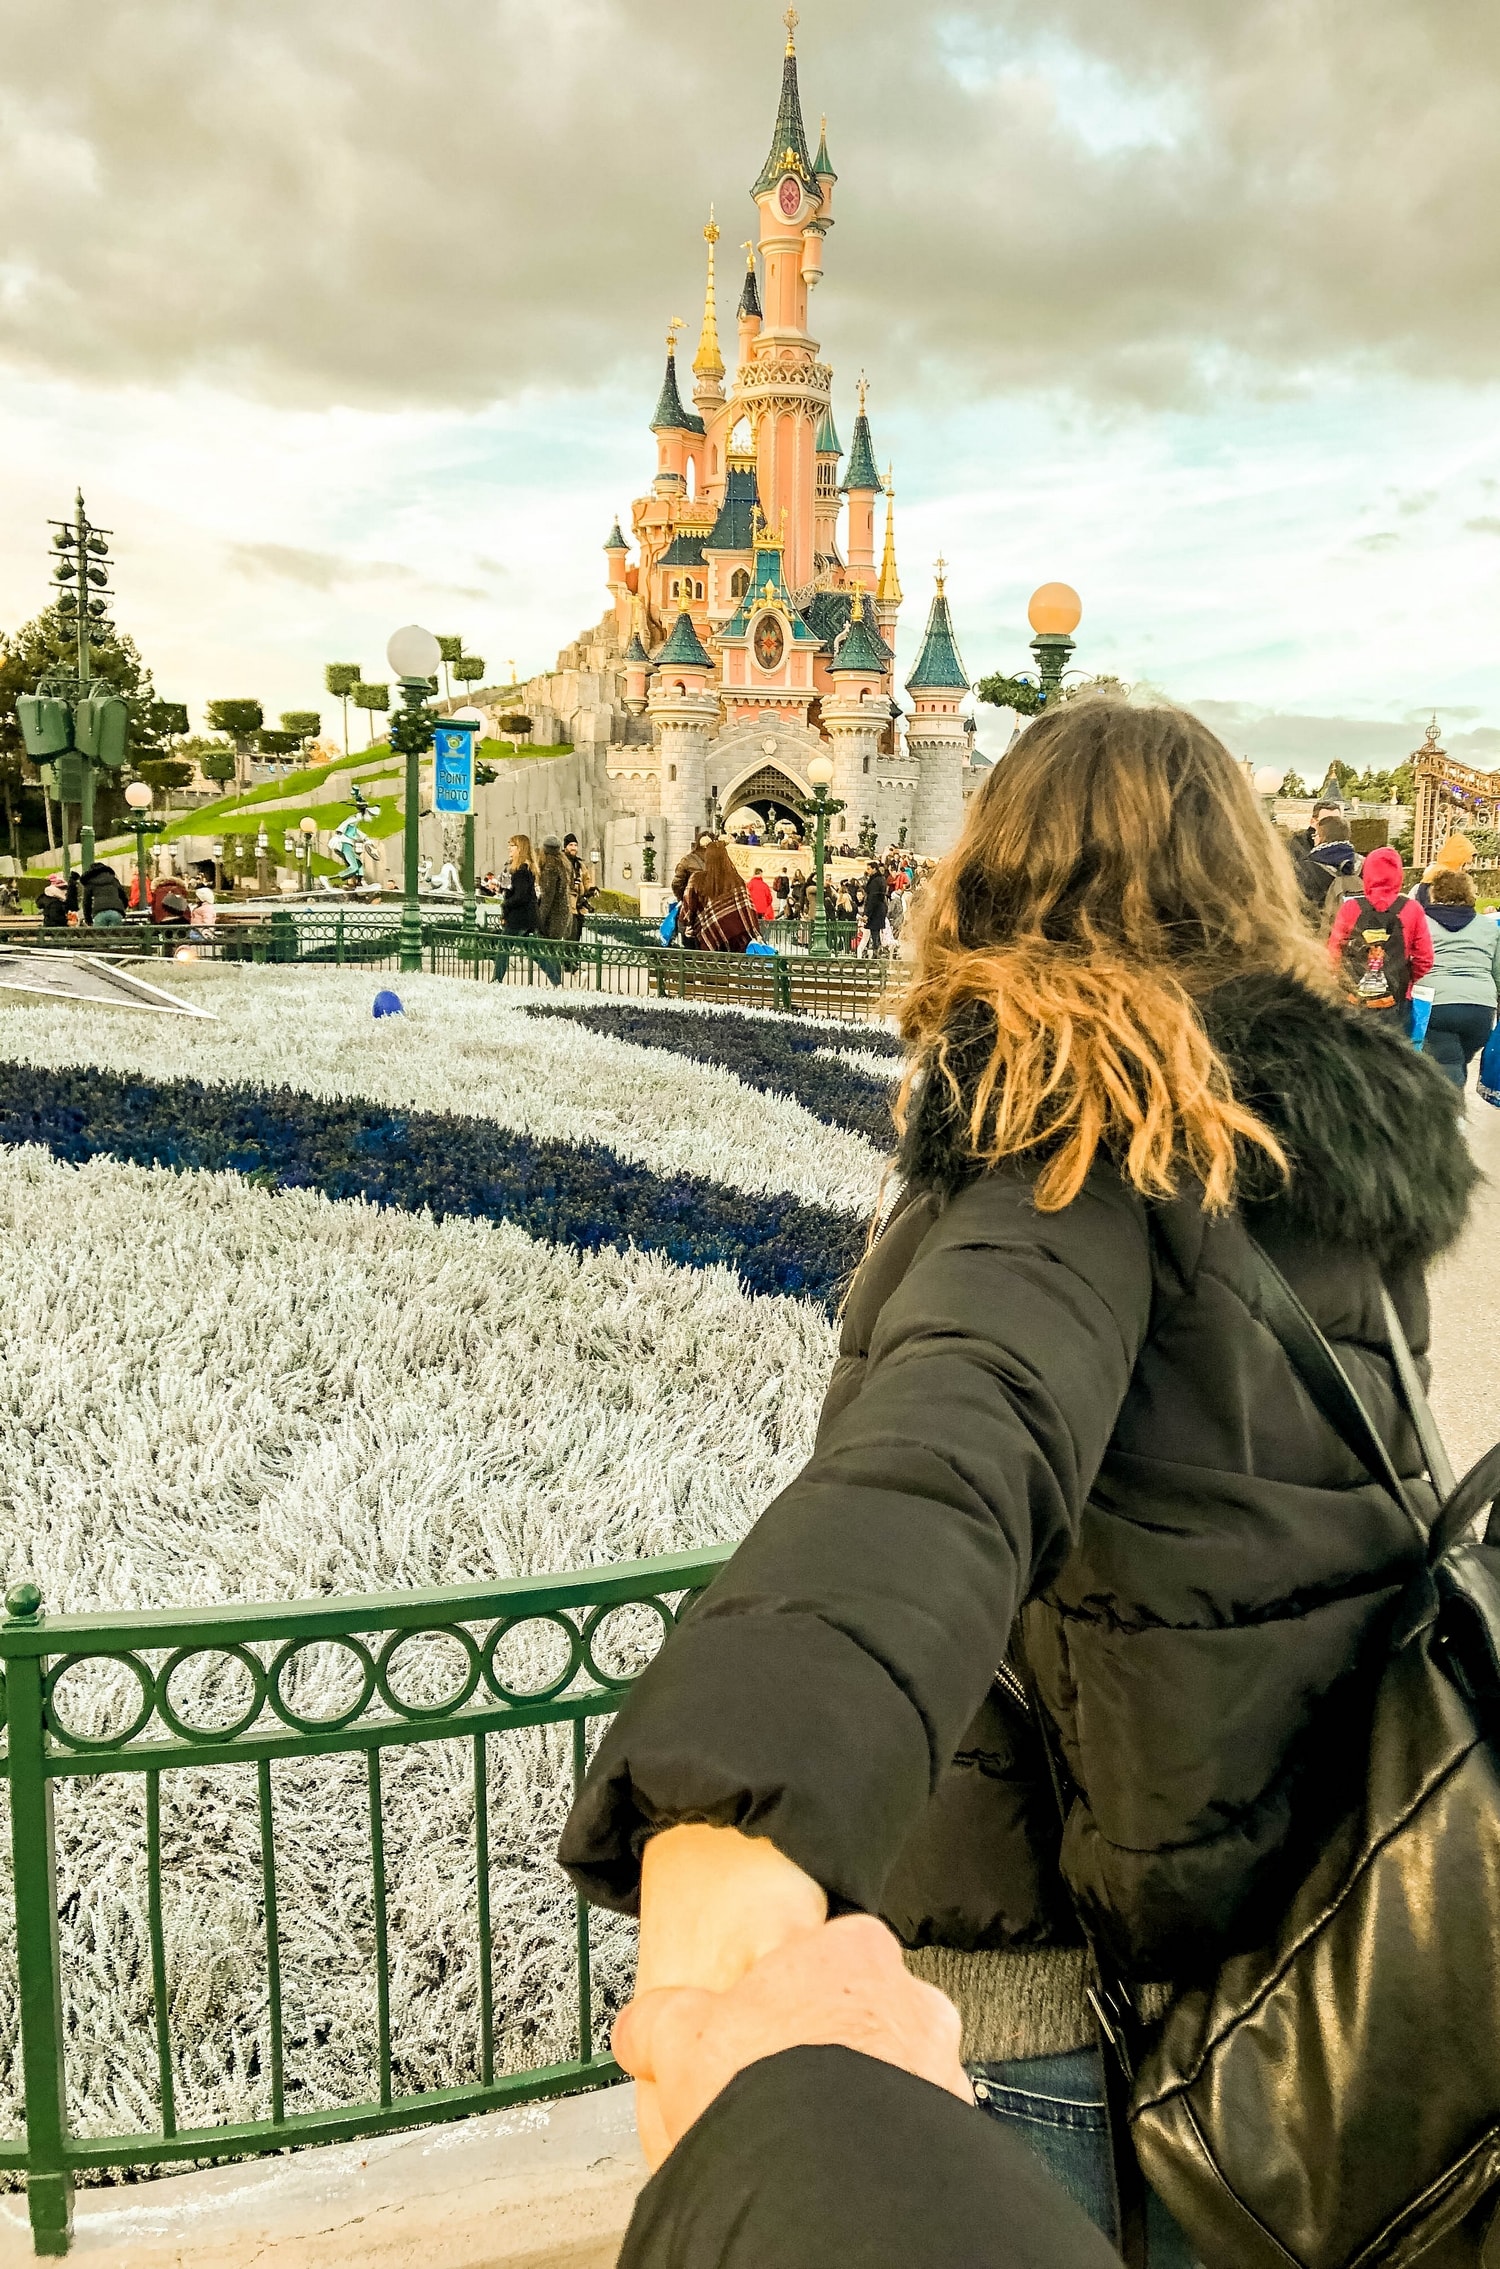 Un noël à Disneyland Paris et premier vlog voyage | happinesscoco.com